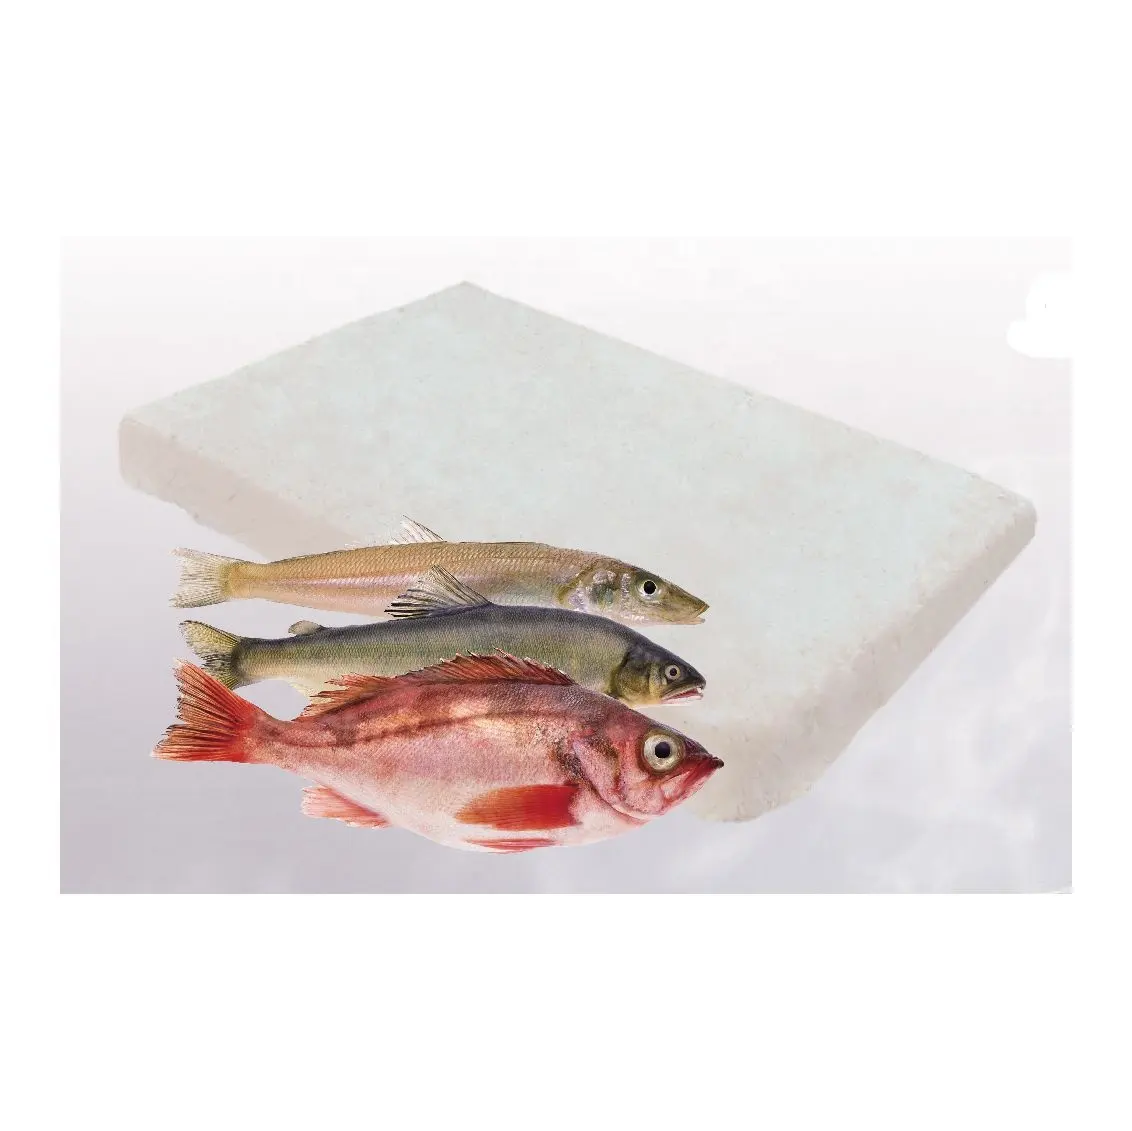 L100 vente à chaud de mélanges surgelés surimi de poisson croquettes de poisson de haute qualité mélange de surimi de poisson à bon prix